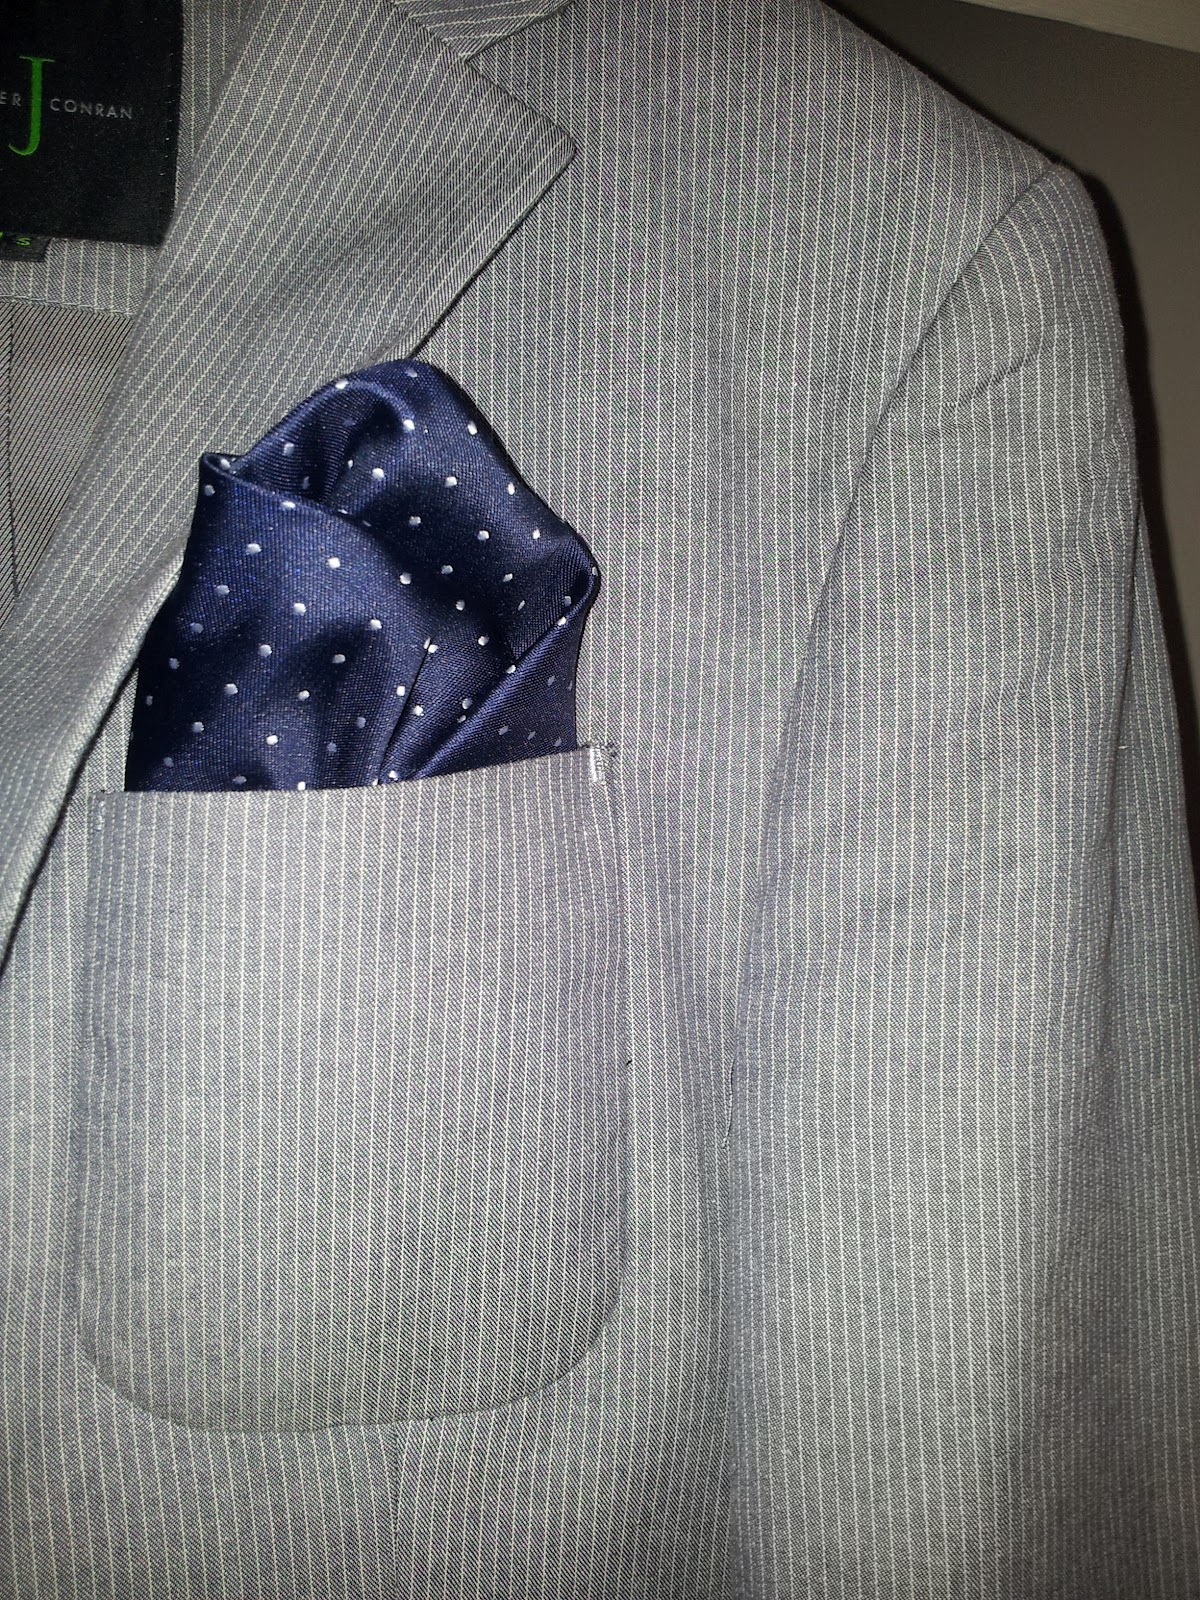 Daily Blazer: Pinstripe Blazer With Polka Dot Handkerchief